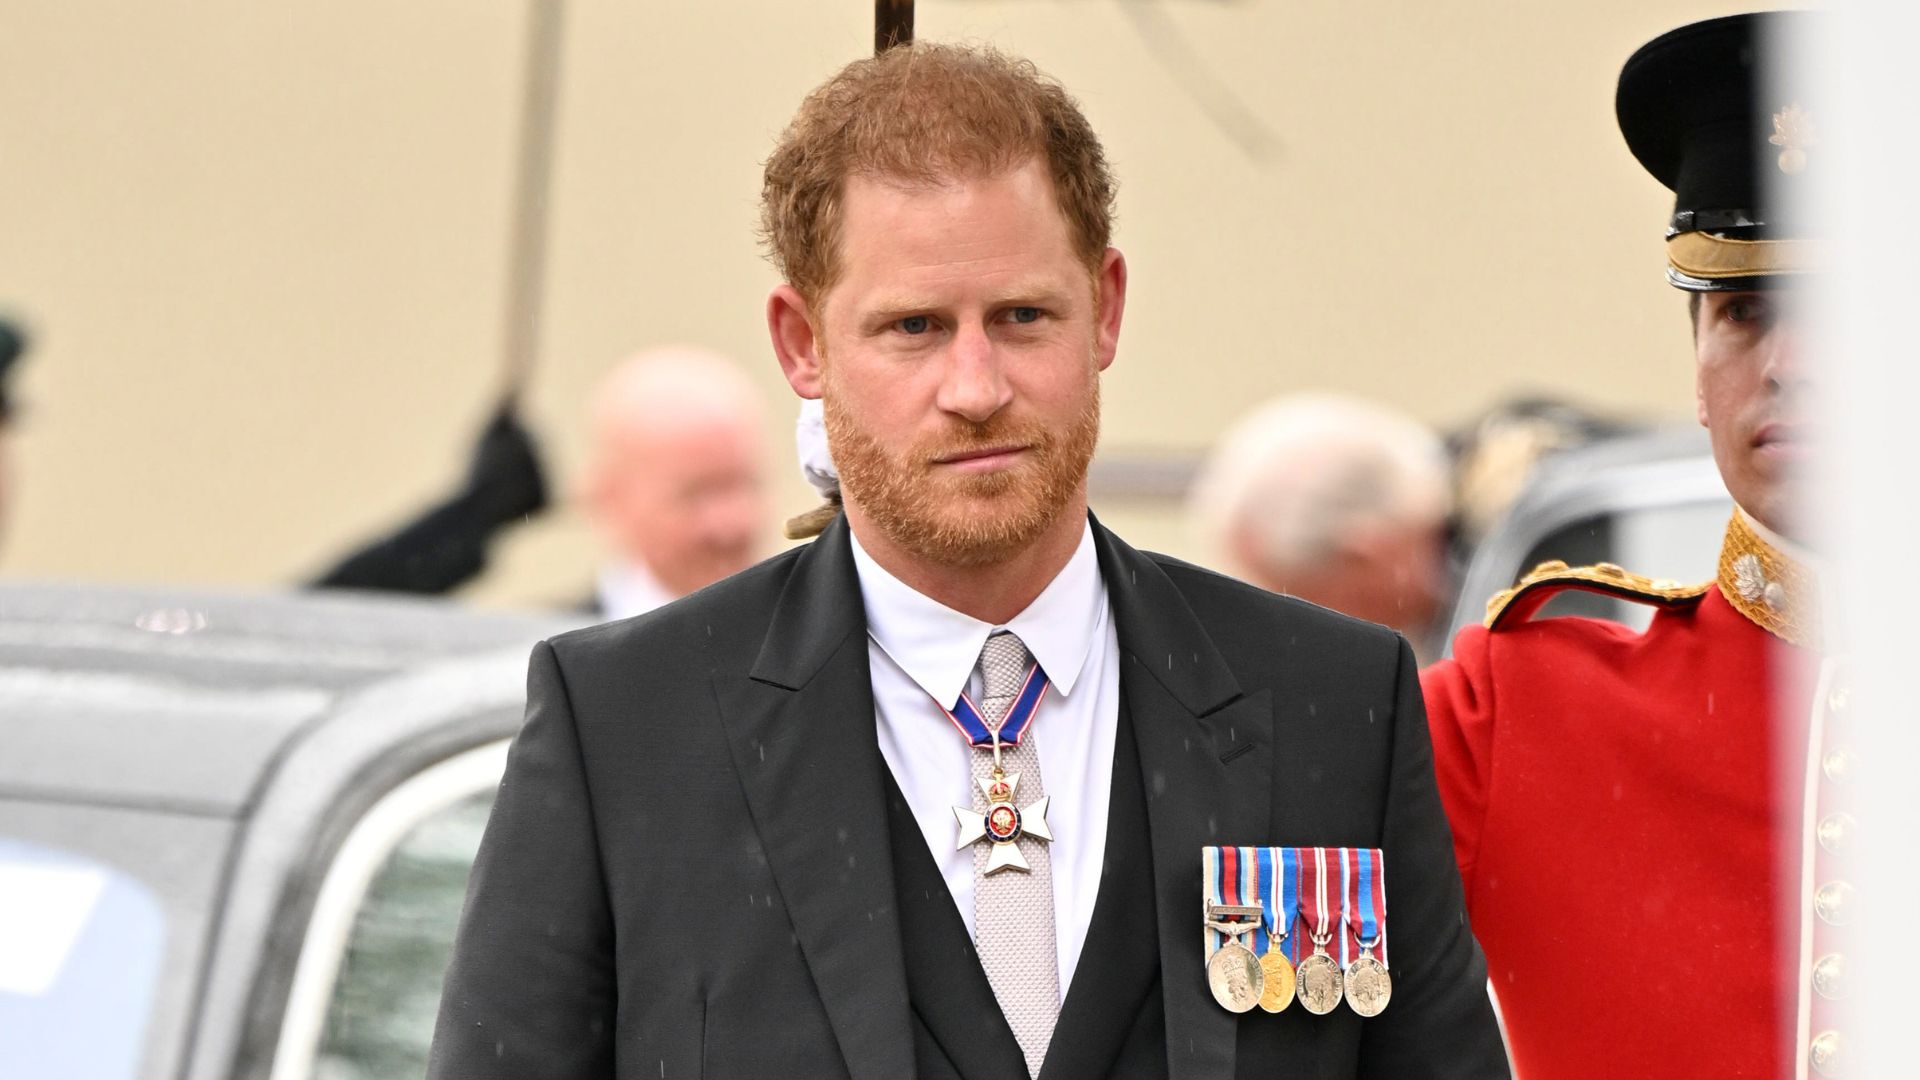 Príncipe Harry teria se encontrado com um membro da família real antes da coroação, diz revista